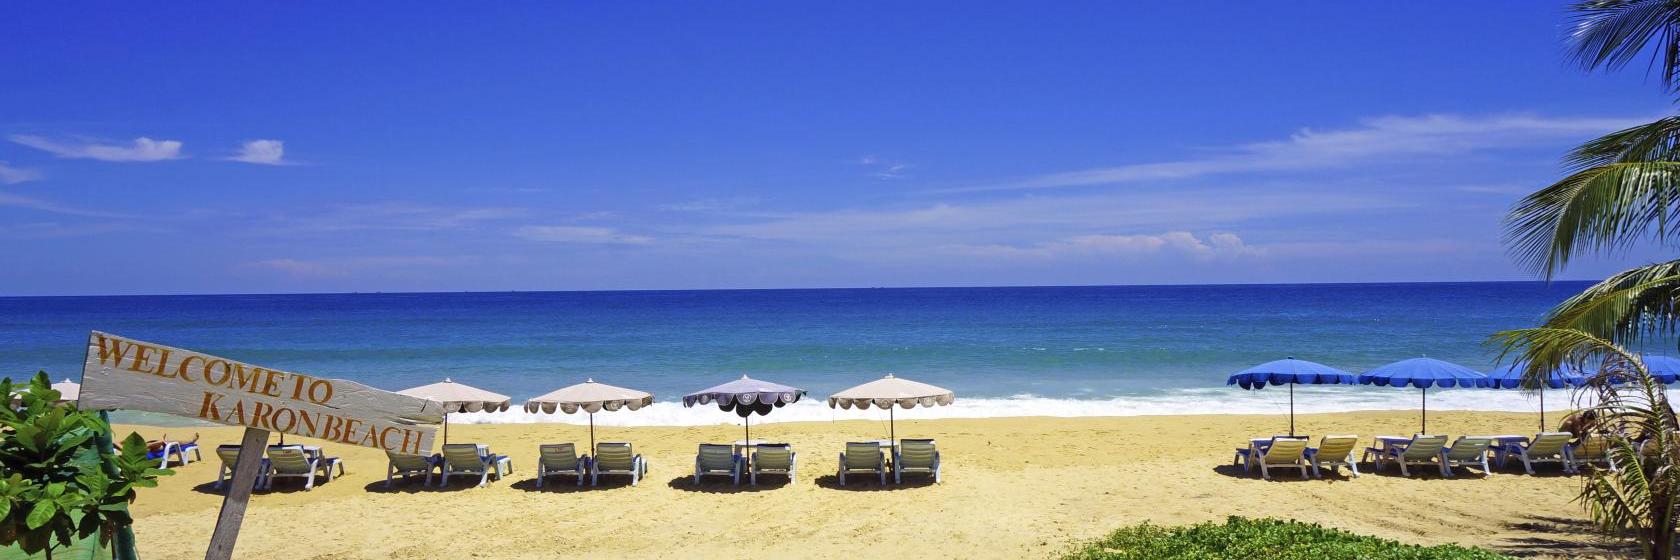 10 Best Karon Beach Hotels, Thailand (From $18)